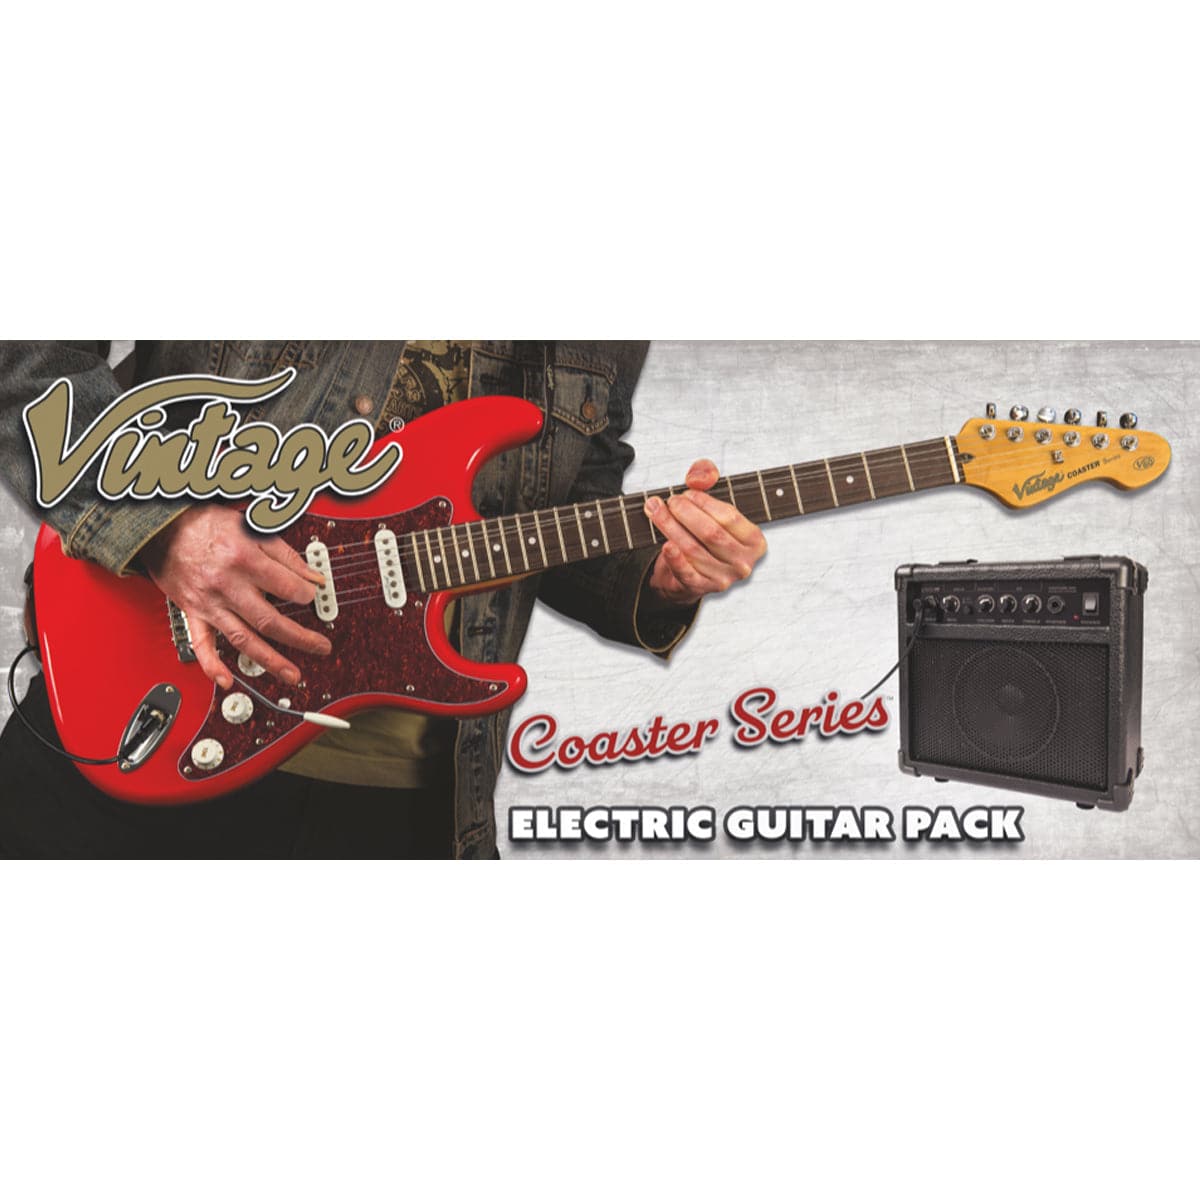 Vintage V60 Coaster Series Electric Guitar Pack ~ Left Hand Boulevard Black